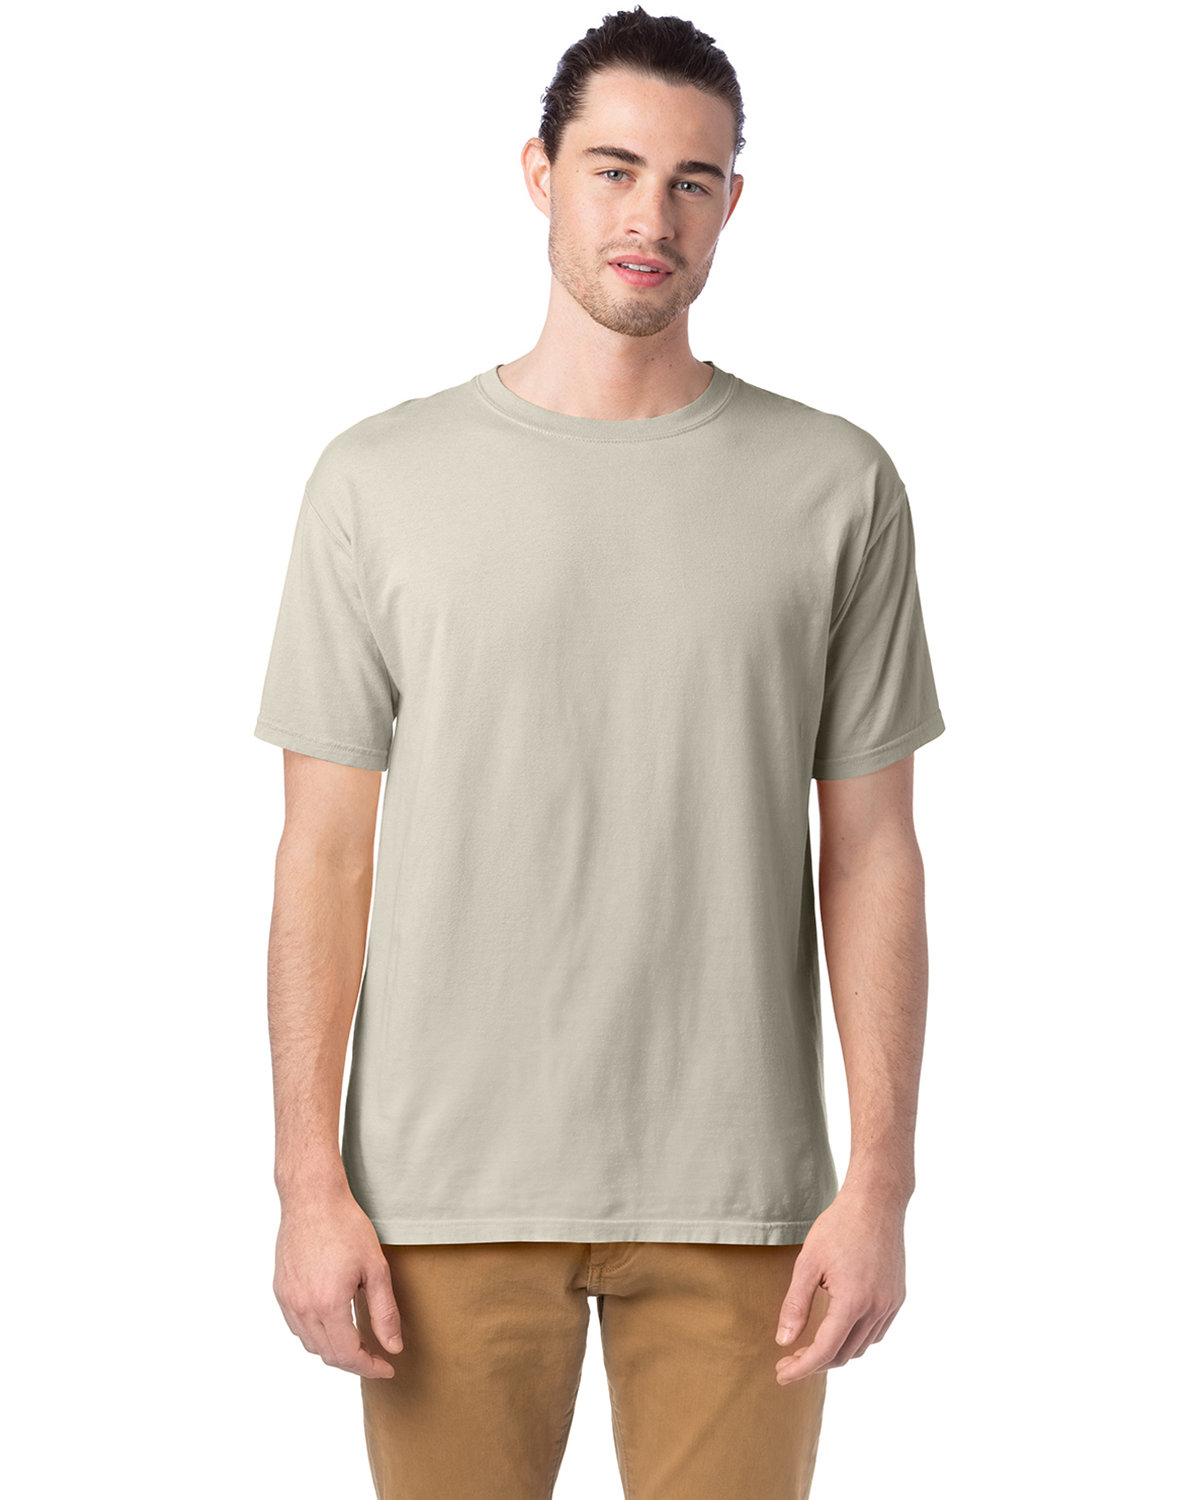 ComfortWash by Hanes GDH100 Men's Garment-Dyed T-Shirt–Parchment (2XL)